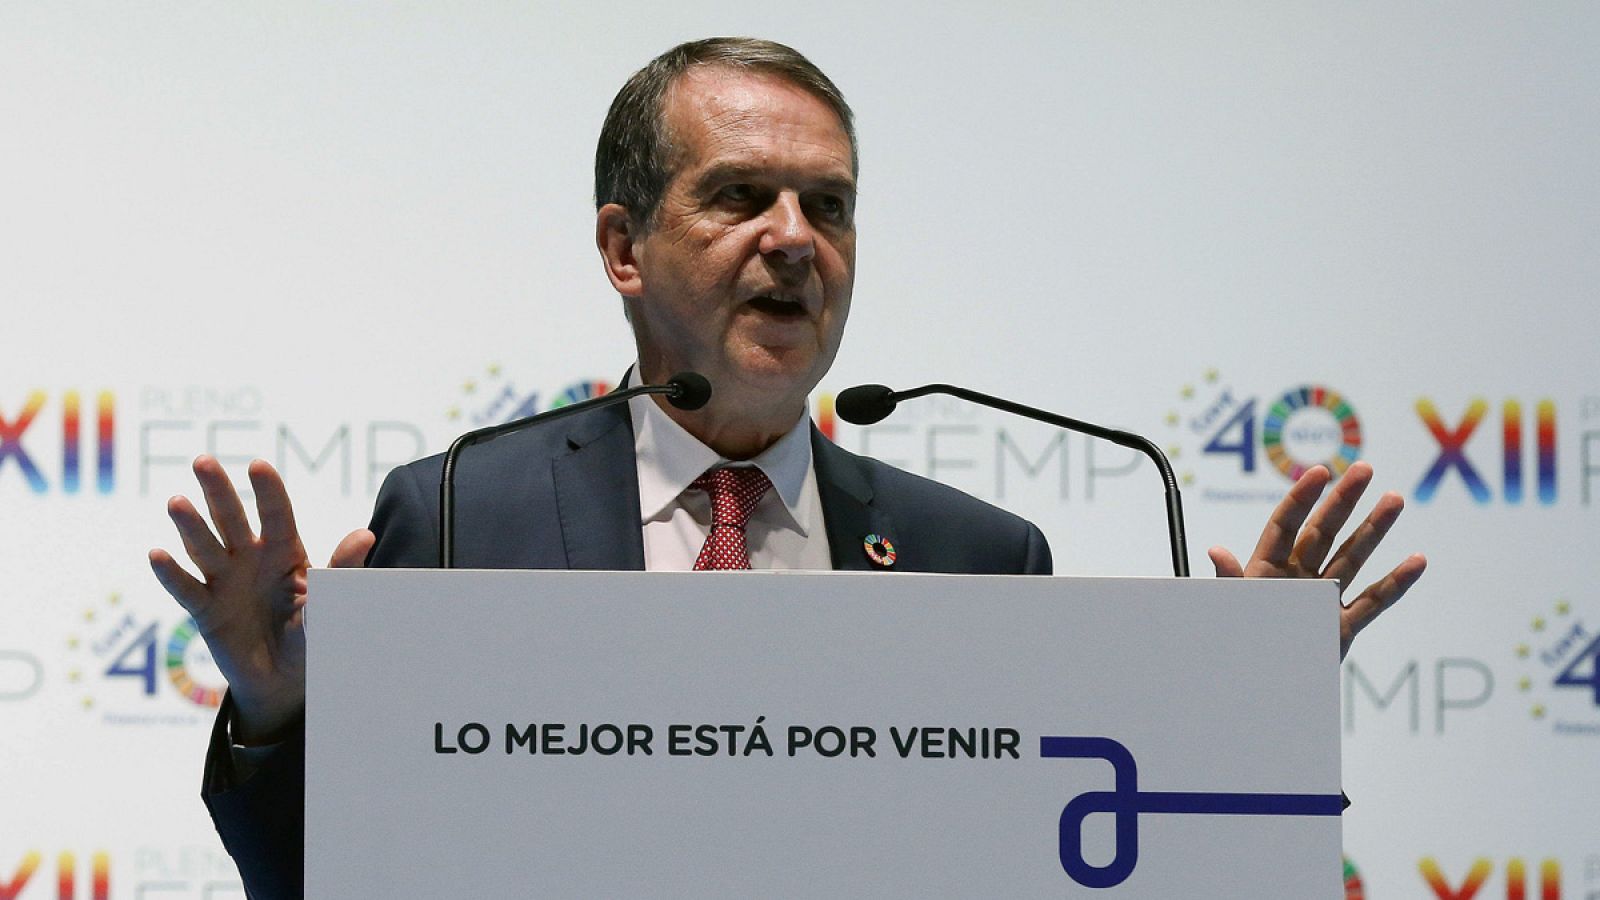 El alcalde de Vigo, Abel Caballero, durante la celebración del XII Pleno de la Federación Española de Municipios y Provincias (FEMP)